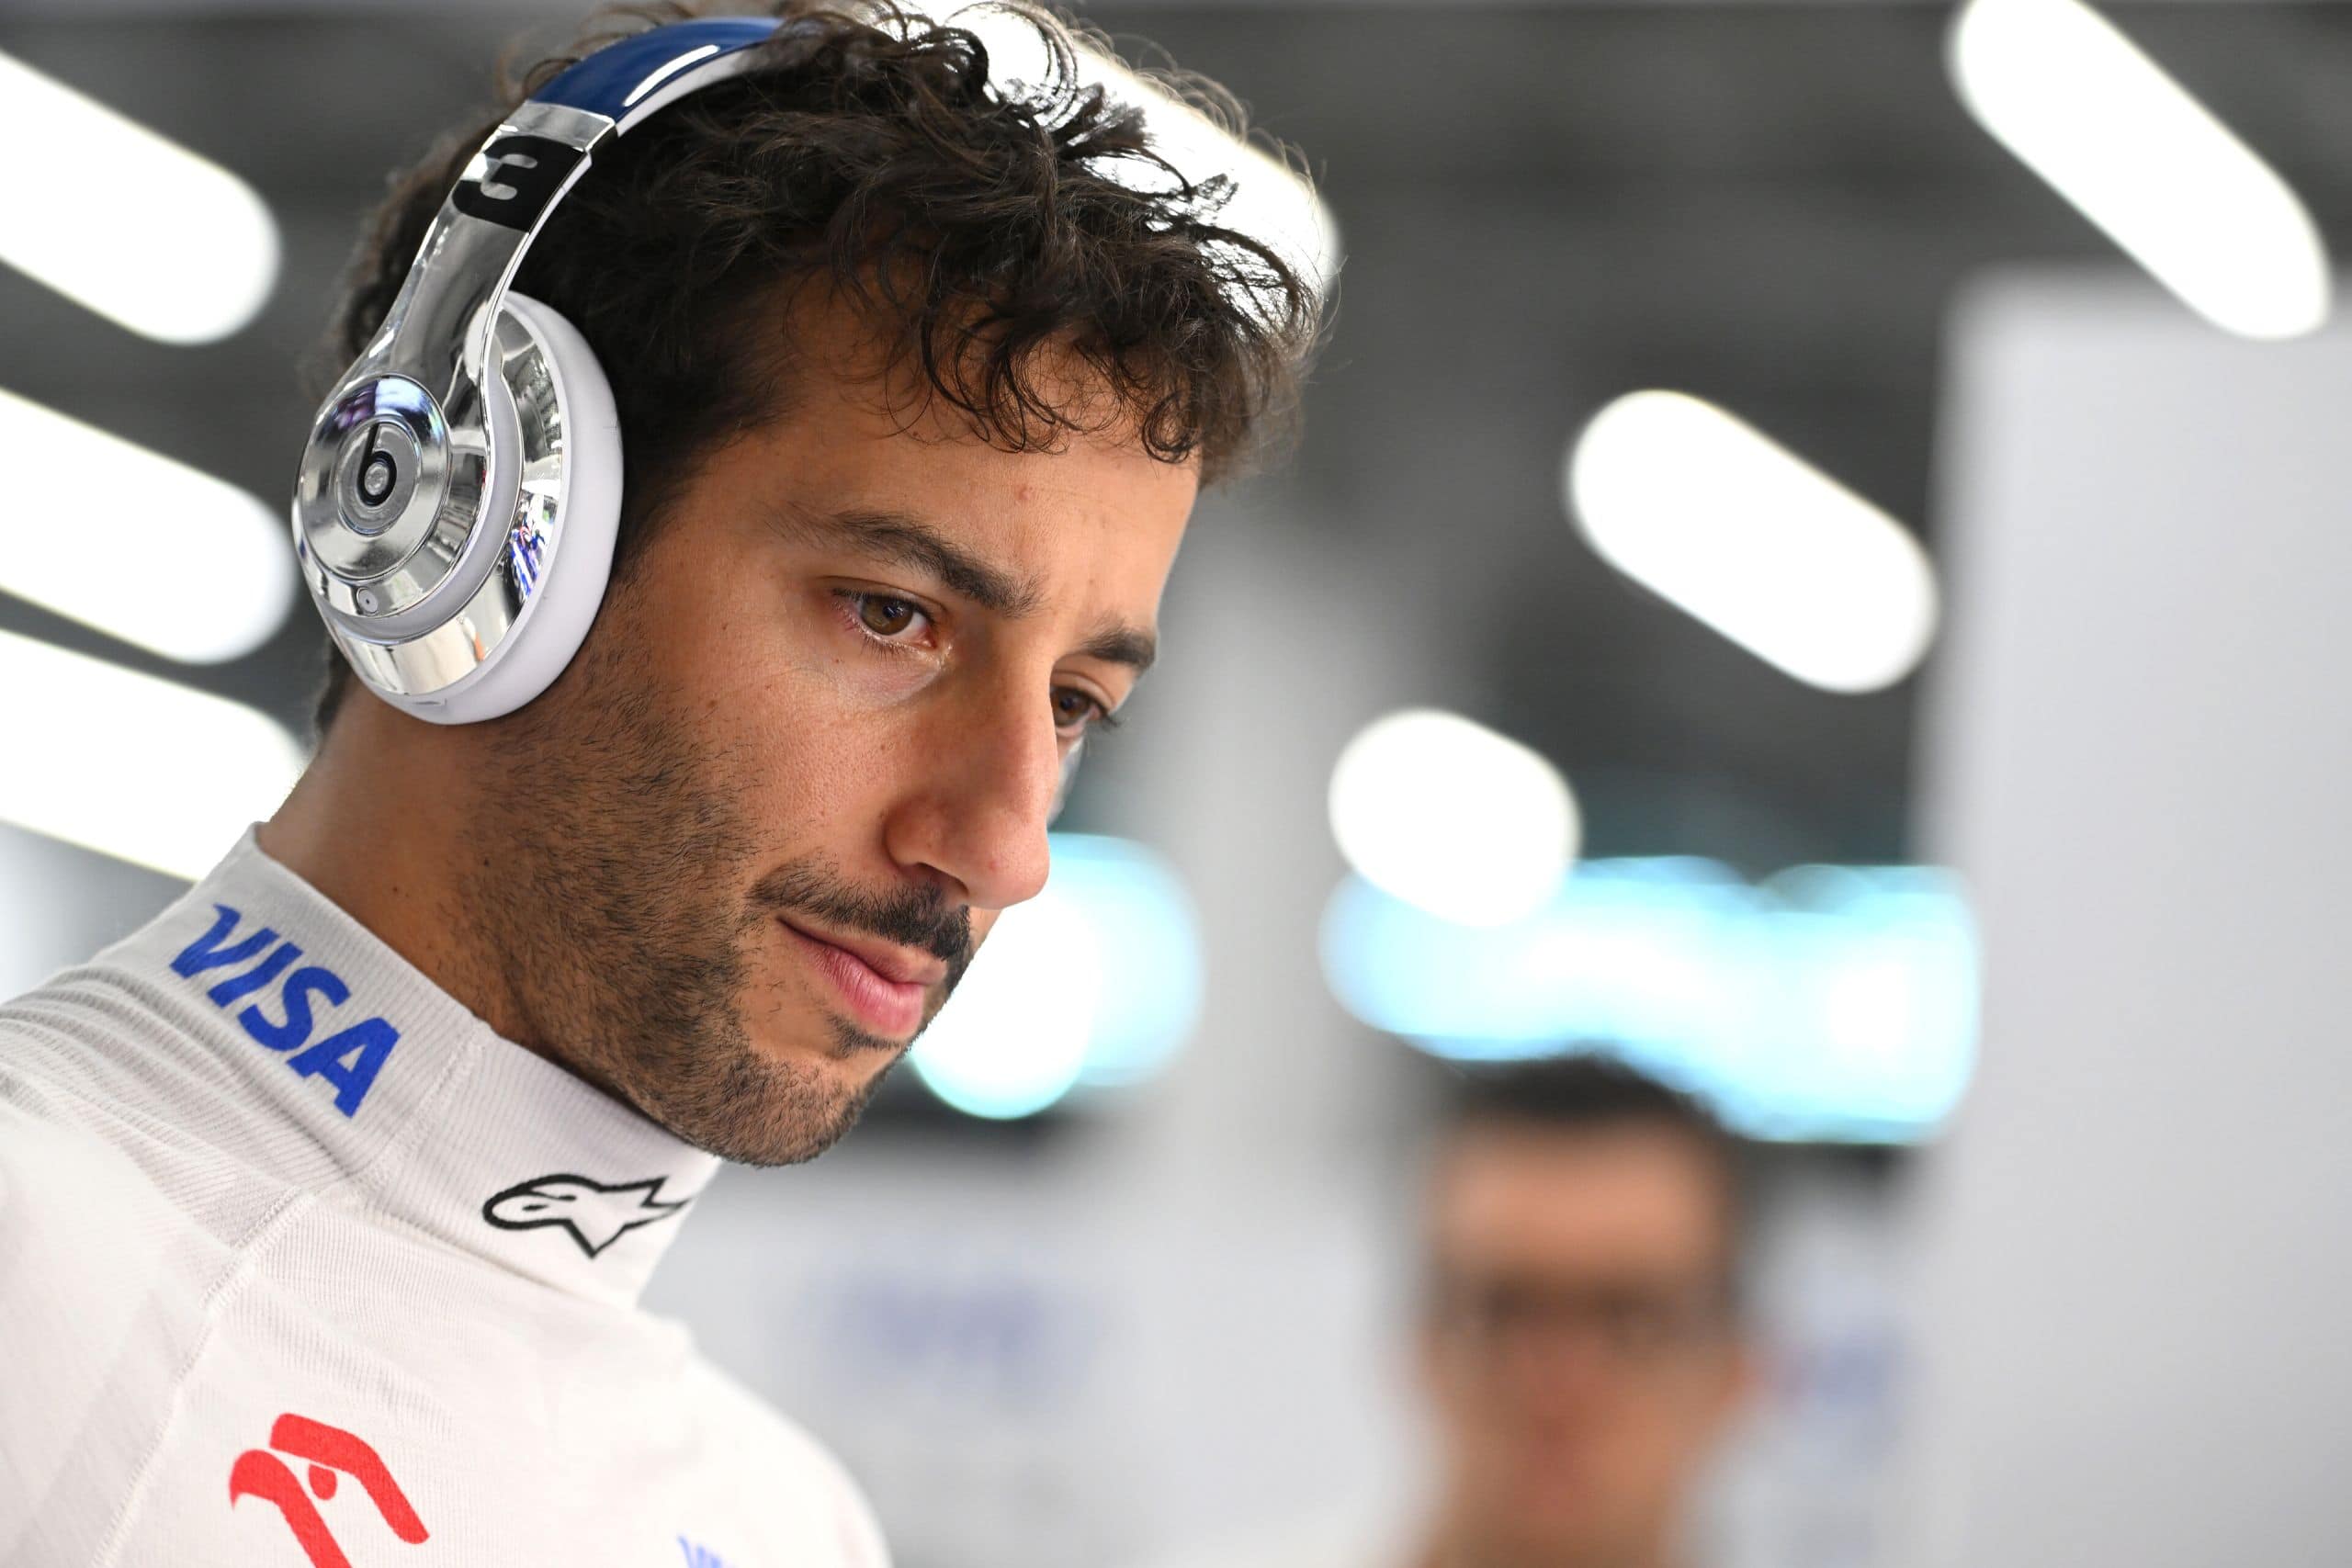 Alan Jones Sinks Shoey Into Daniel Ricciardo